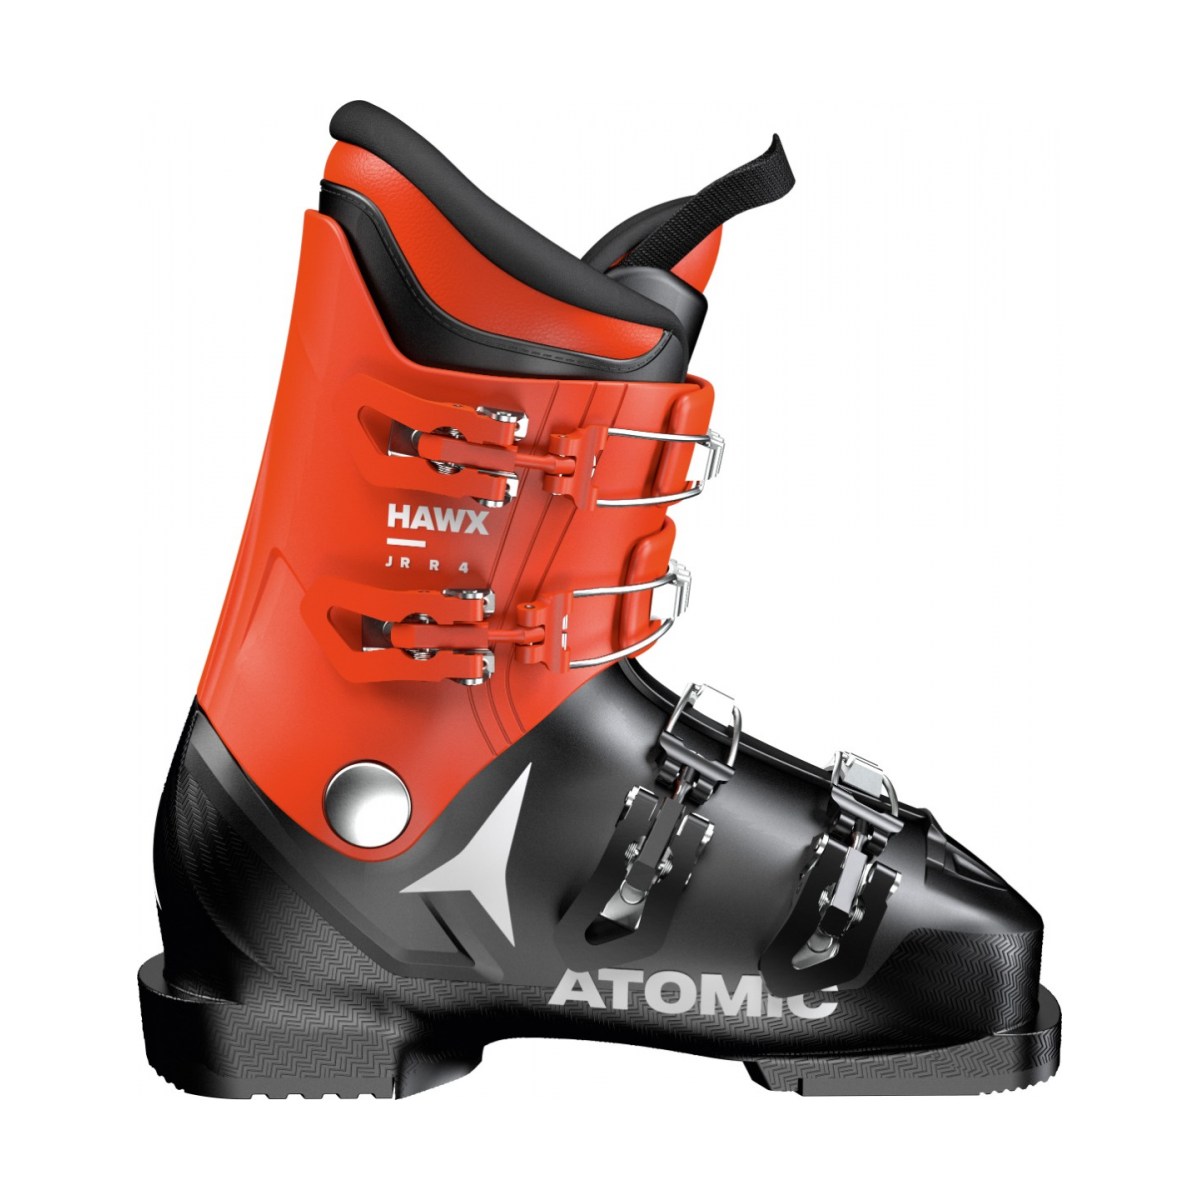 ATOMIC HAWX JR R4 alpine ski boots - black/red